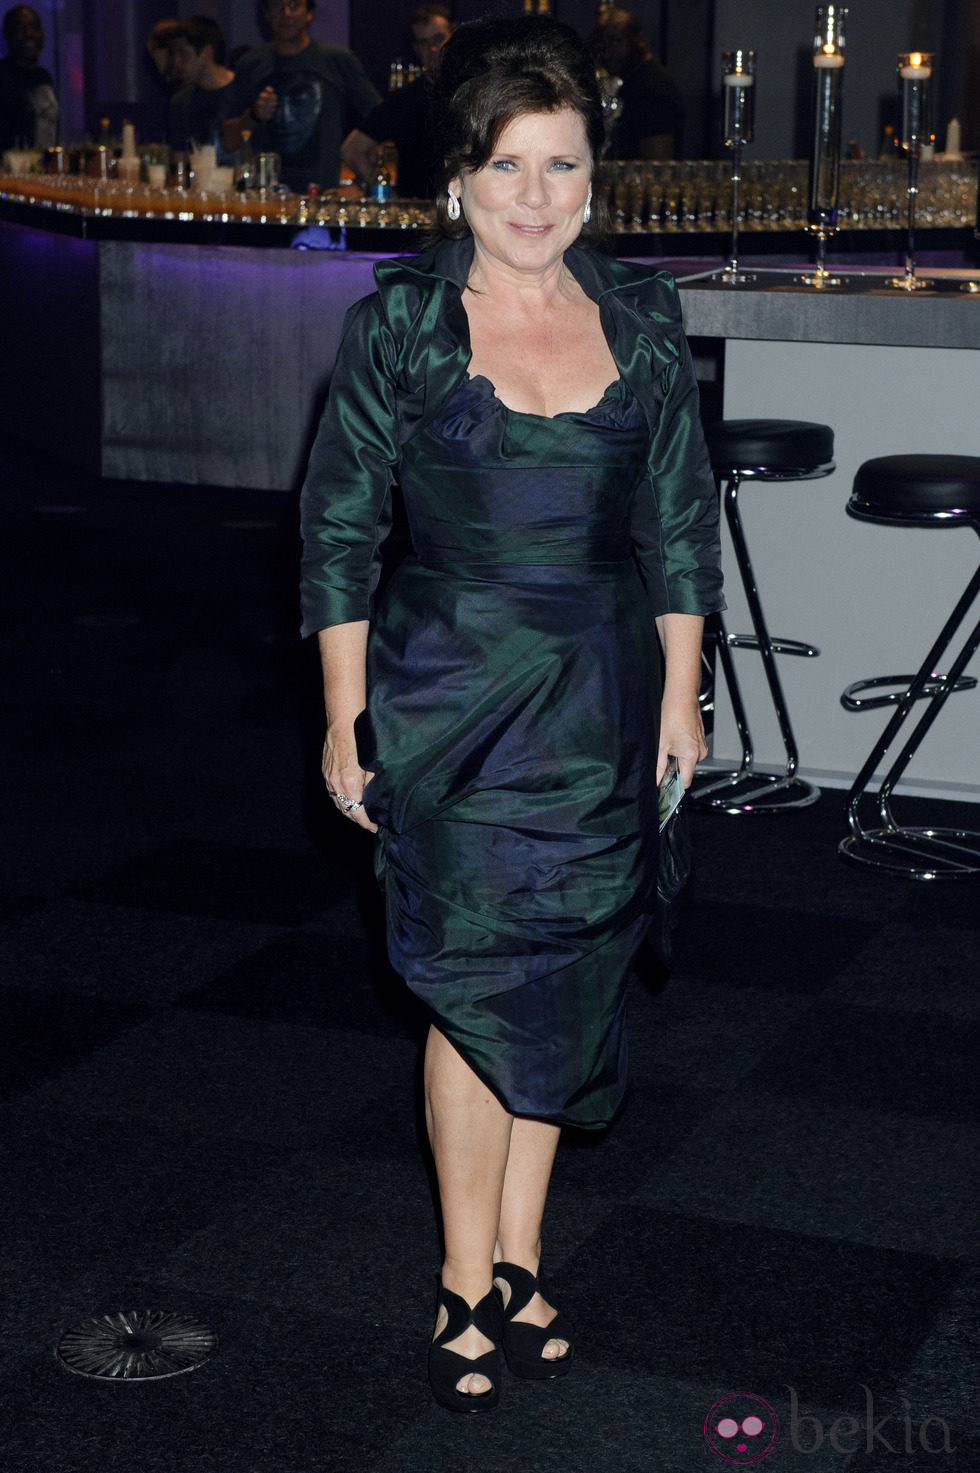 Imelda Staunton en la fiesta posterior al estreno de Harry Potter en Londres